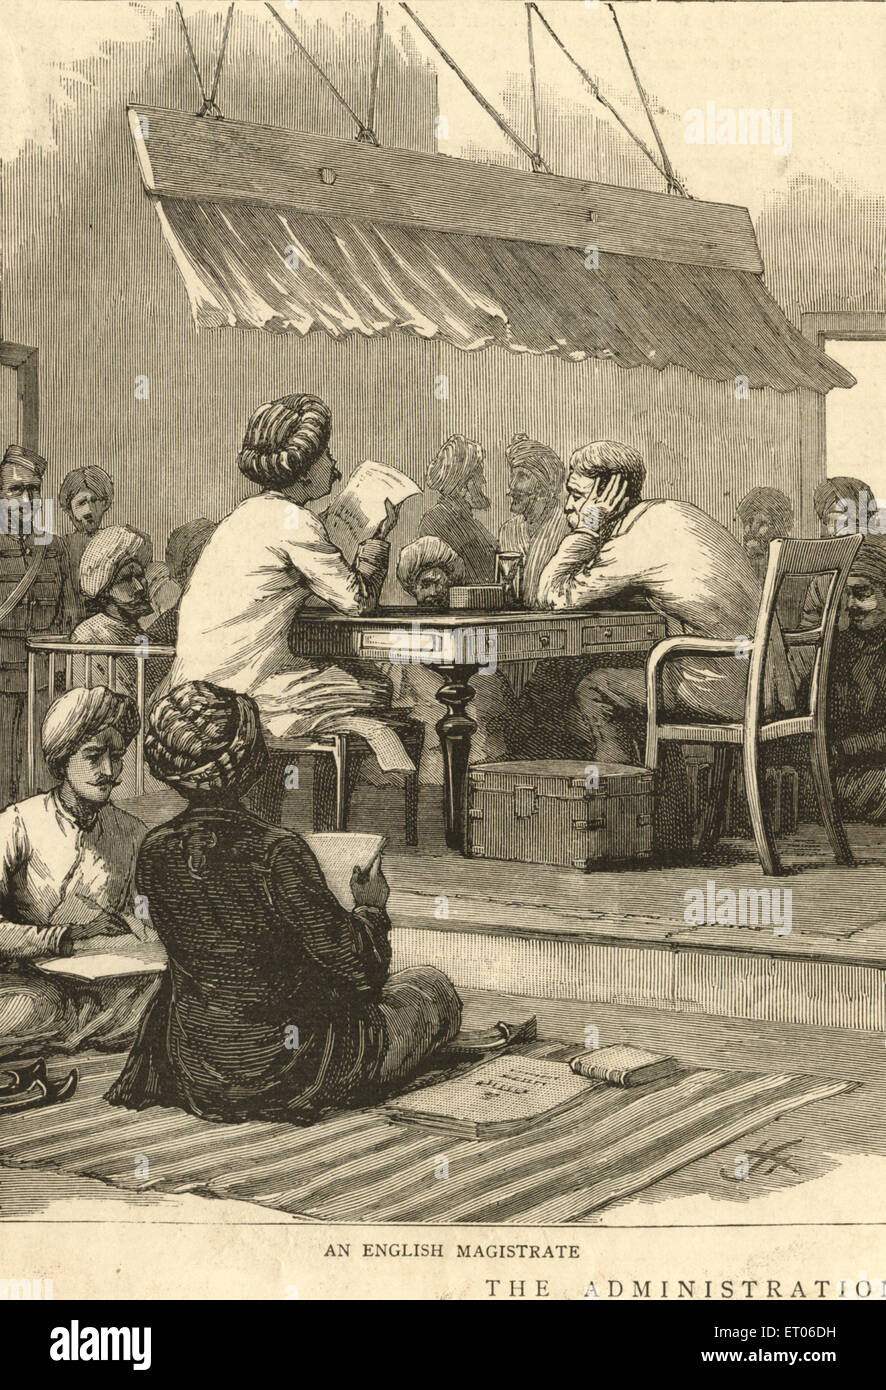 Un magistrat anglais, administration britannique, graphique 16th janvier 1886, ancienne image vintage 1800s, Inde Banque D'Images